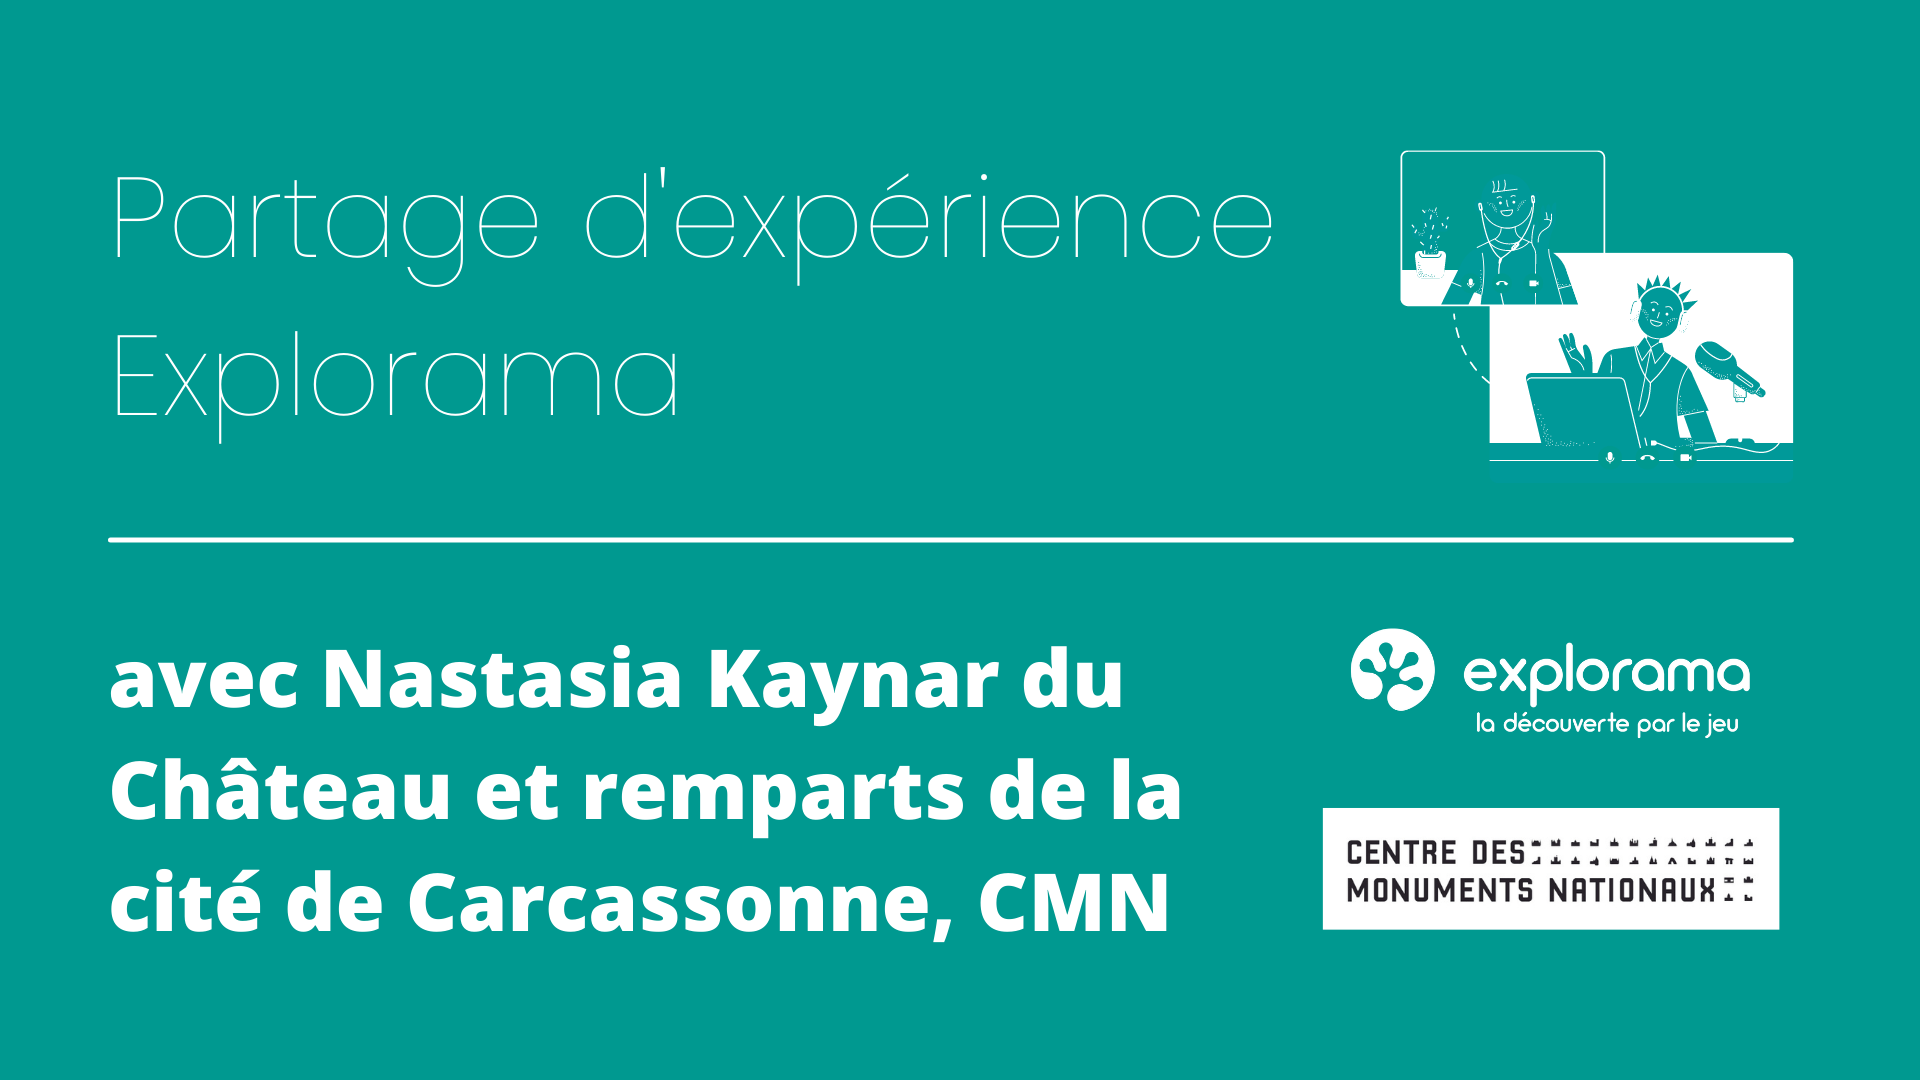 Image interview avec Nastasia Kaynar de la Cité de Carcassonne